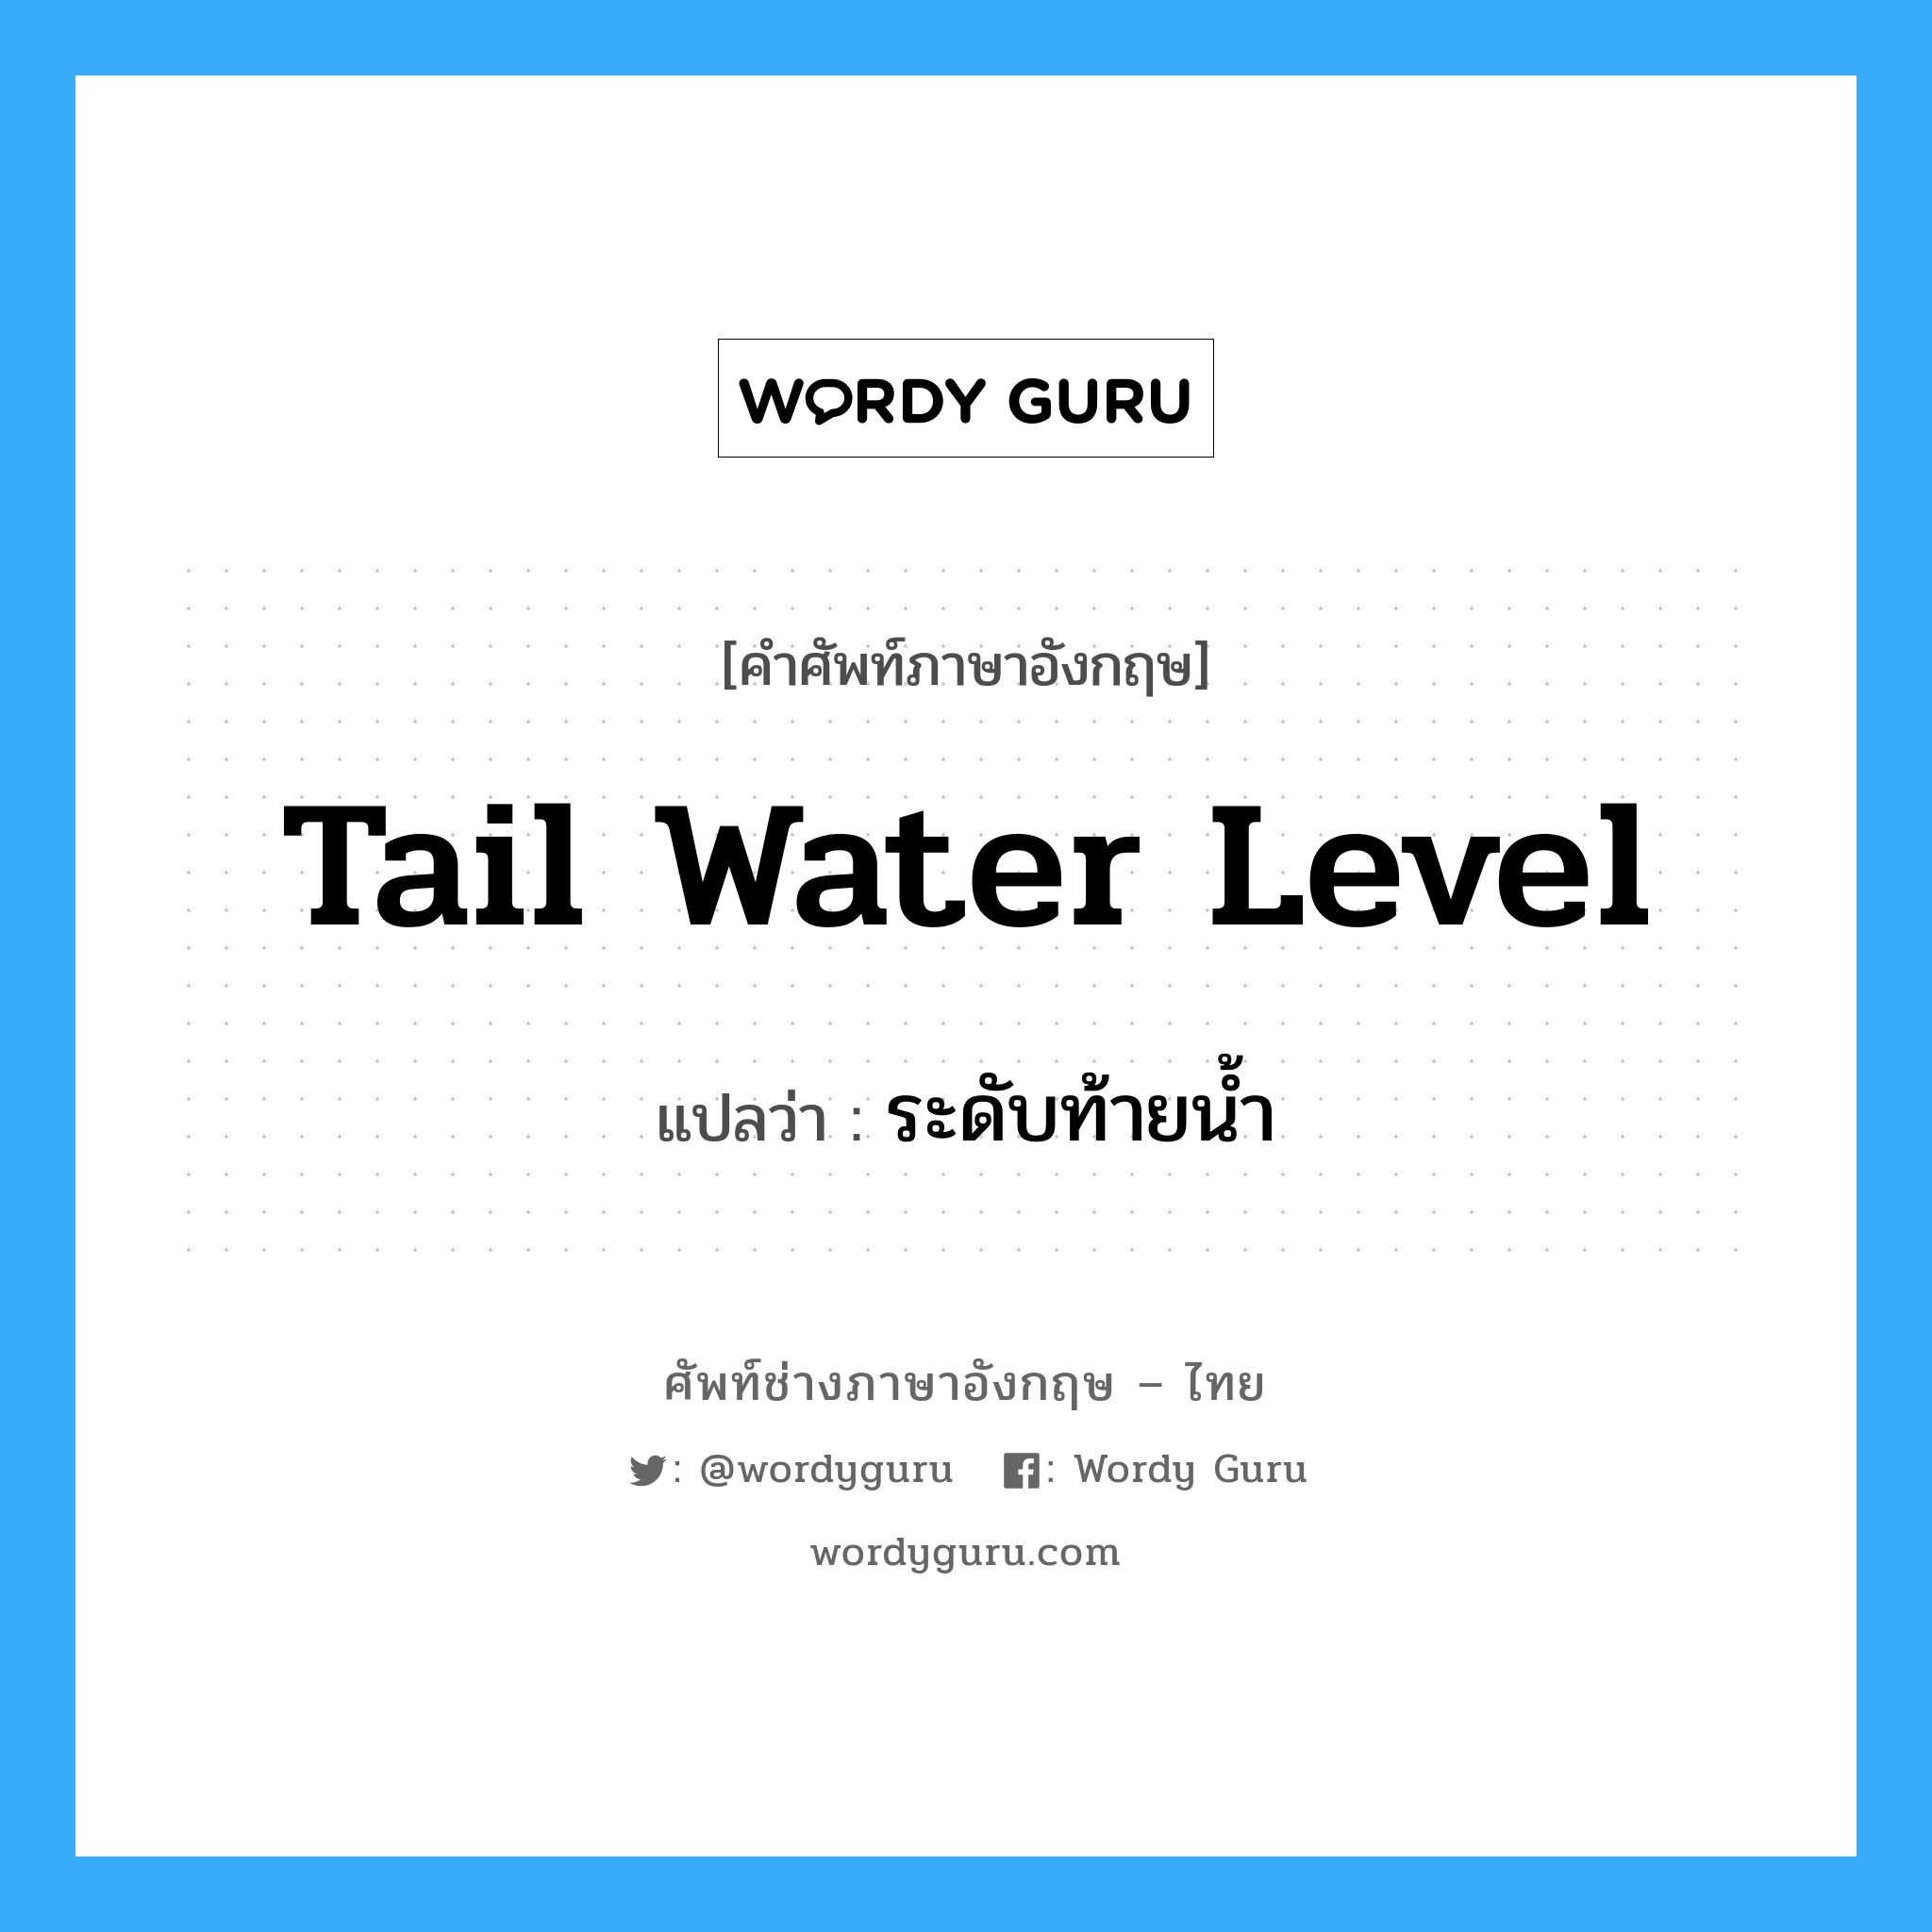 ระดับท้ายน้ำ ภาษาอังกฤษ?, คำศัพท์ช่างภาษาอังกฤษ - ไทย ระดับท้ายน้ำ คำศัพท์ภาษาอังกฤษ ระดับท้ายน้ำ แปลว่า tail water level